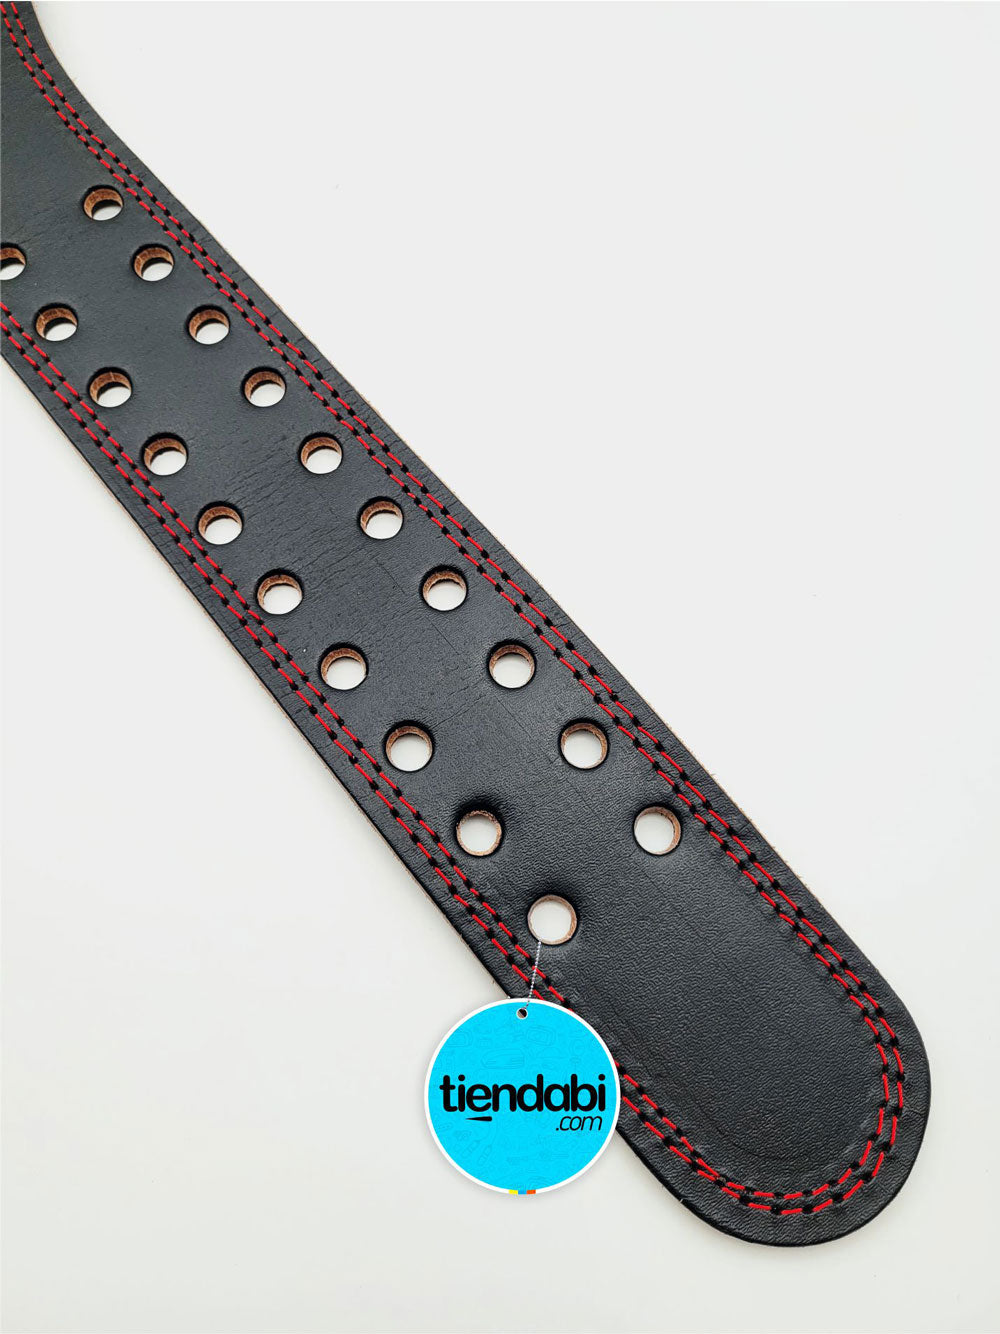 Cinturón profesional para Gimnasio elaborado en cuero de Res 100% Genuino, con diseño ergonómico que ayuda a aumentar la estabilidad en la zona media-baja de la columna